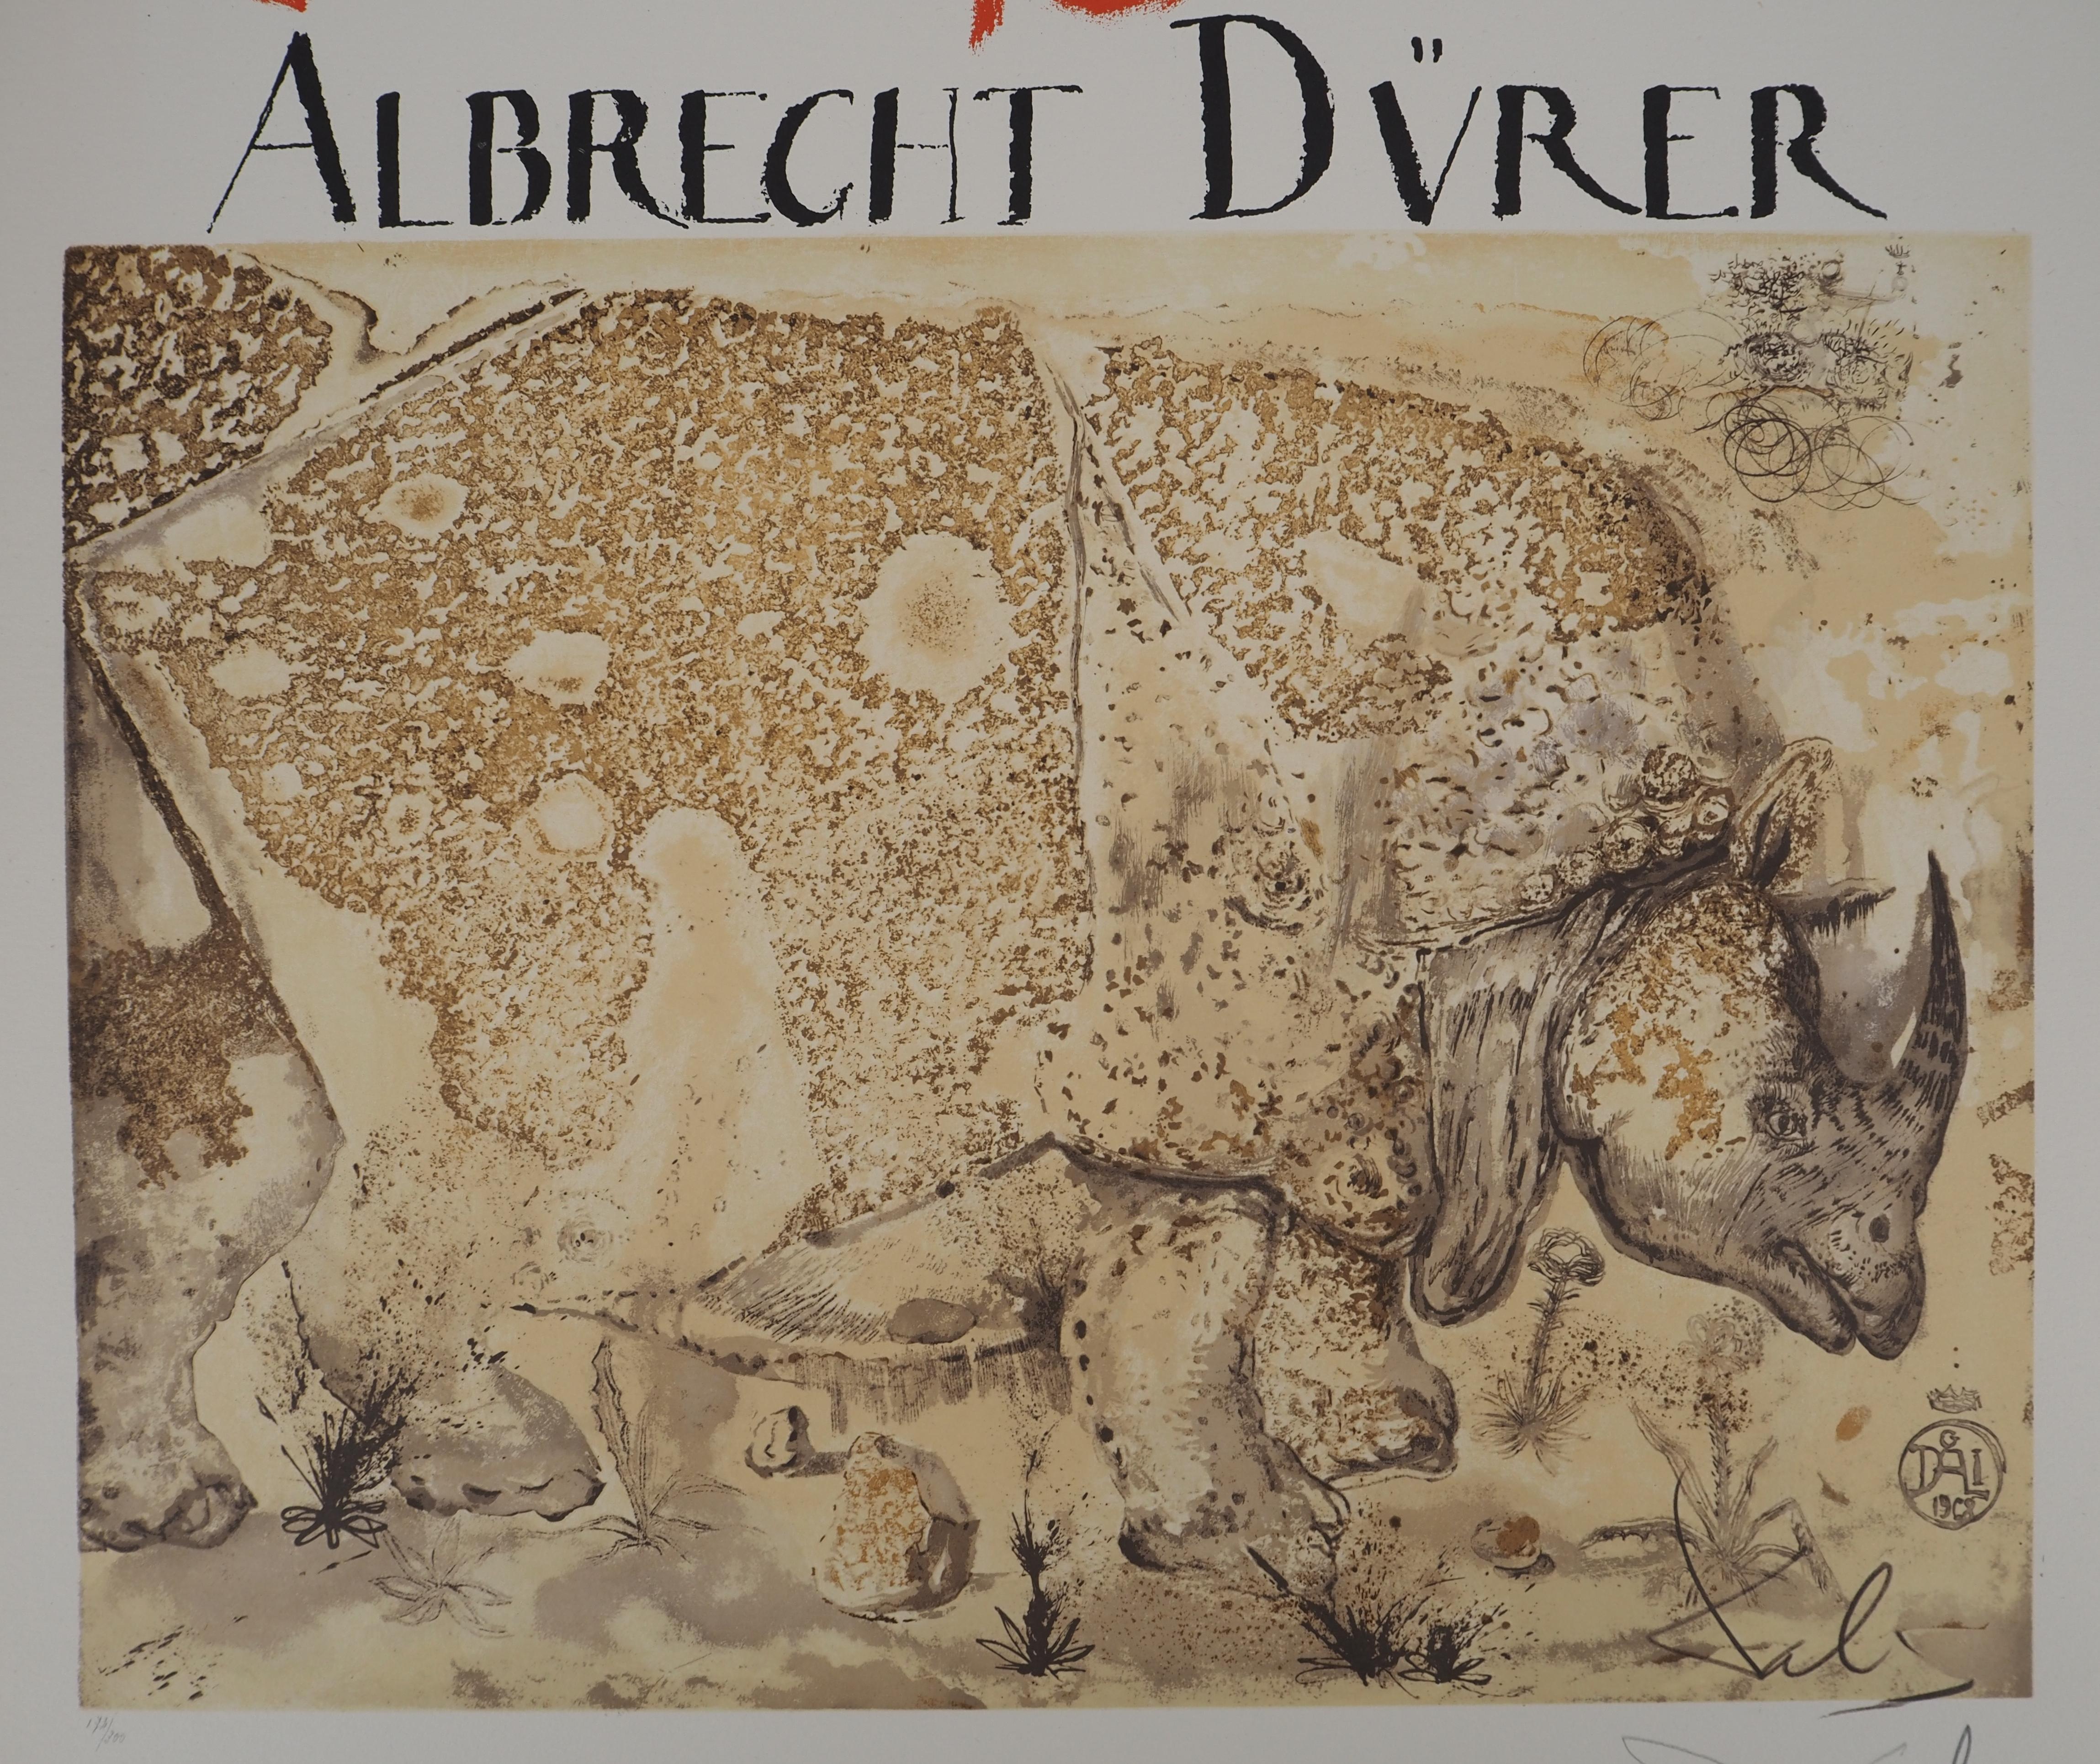 Rhinoceros, Hommage à Albrecht DURER - Affiche lithographique signée (Gaspar n° 1503) - Surréalisme Print par Salvador Dalí